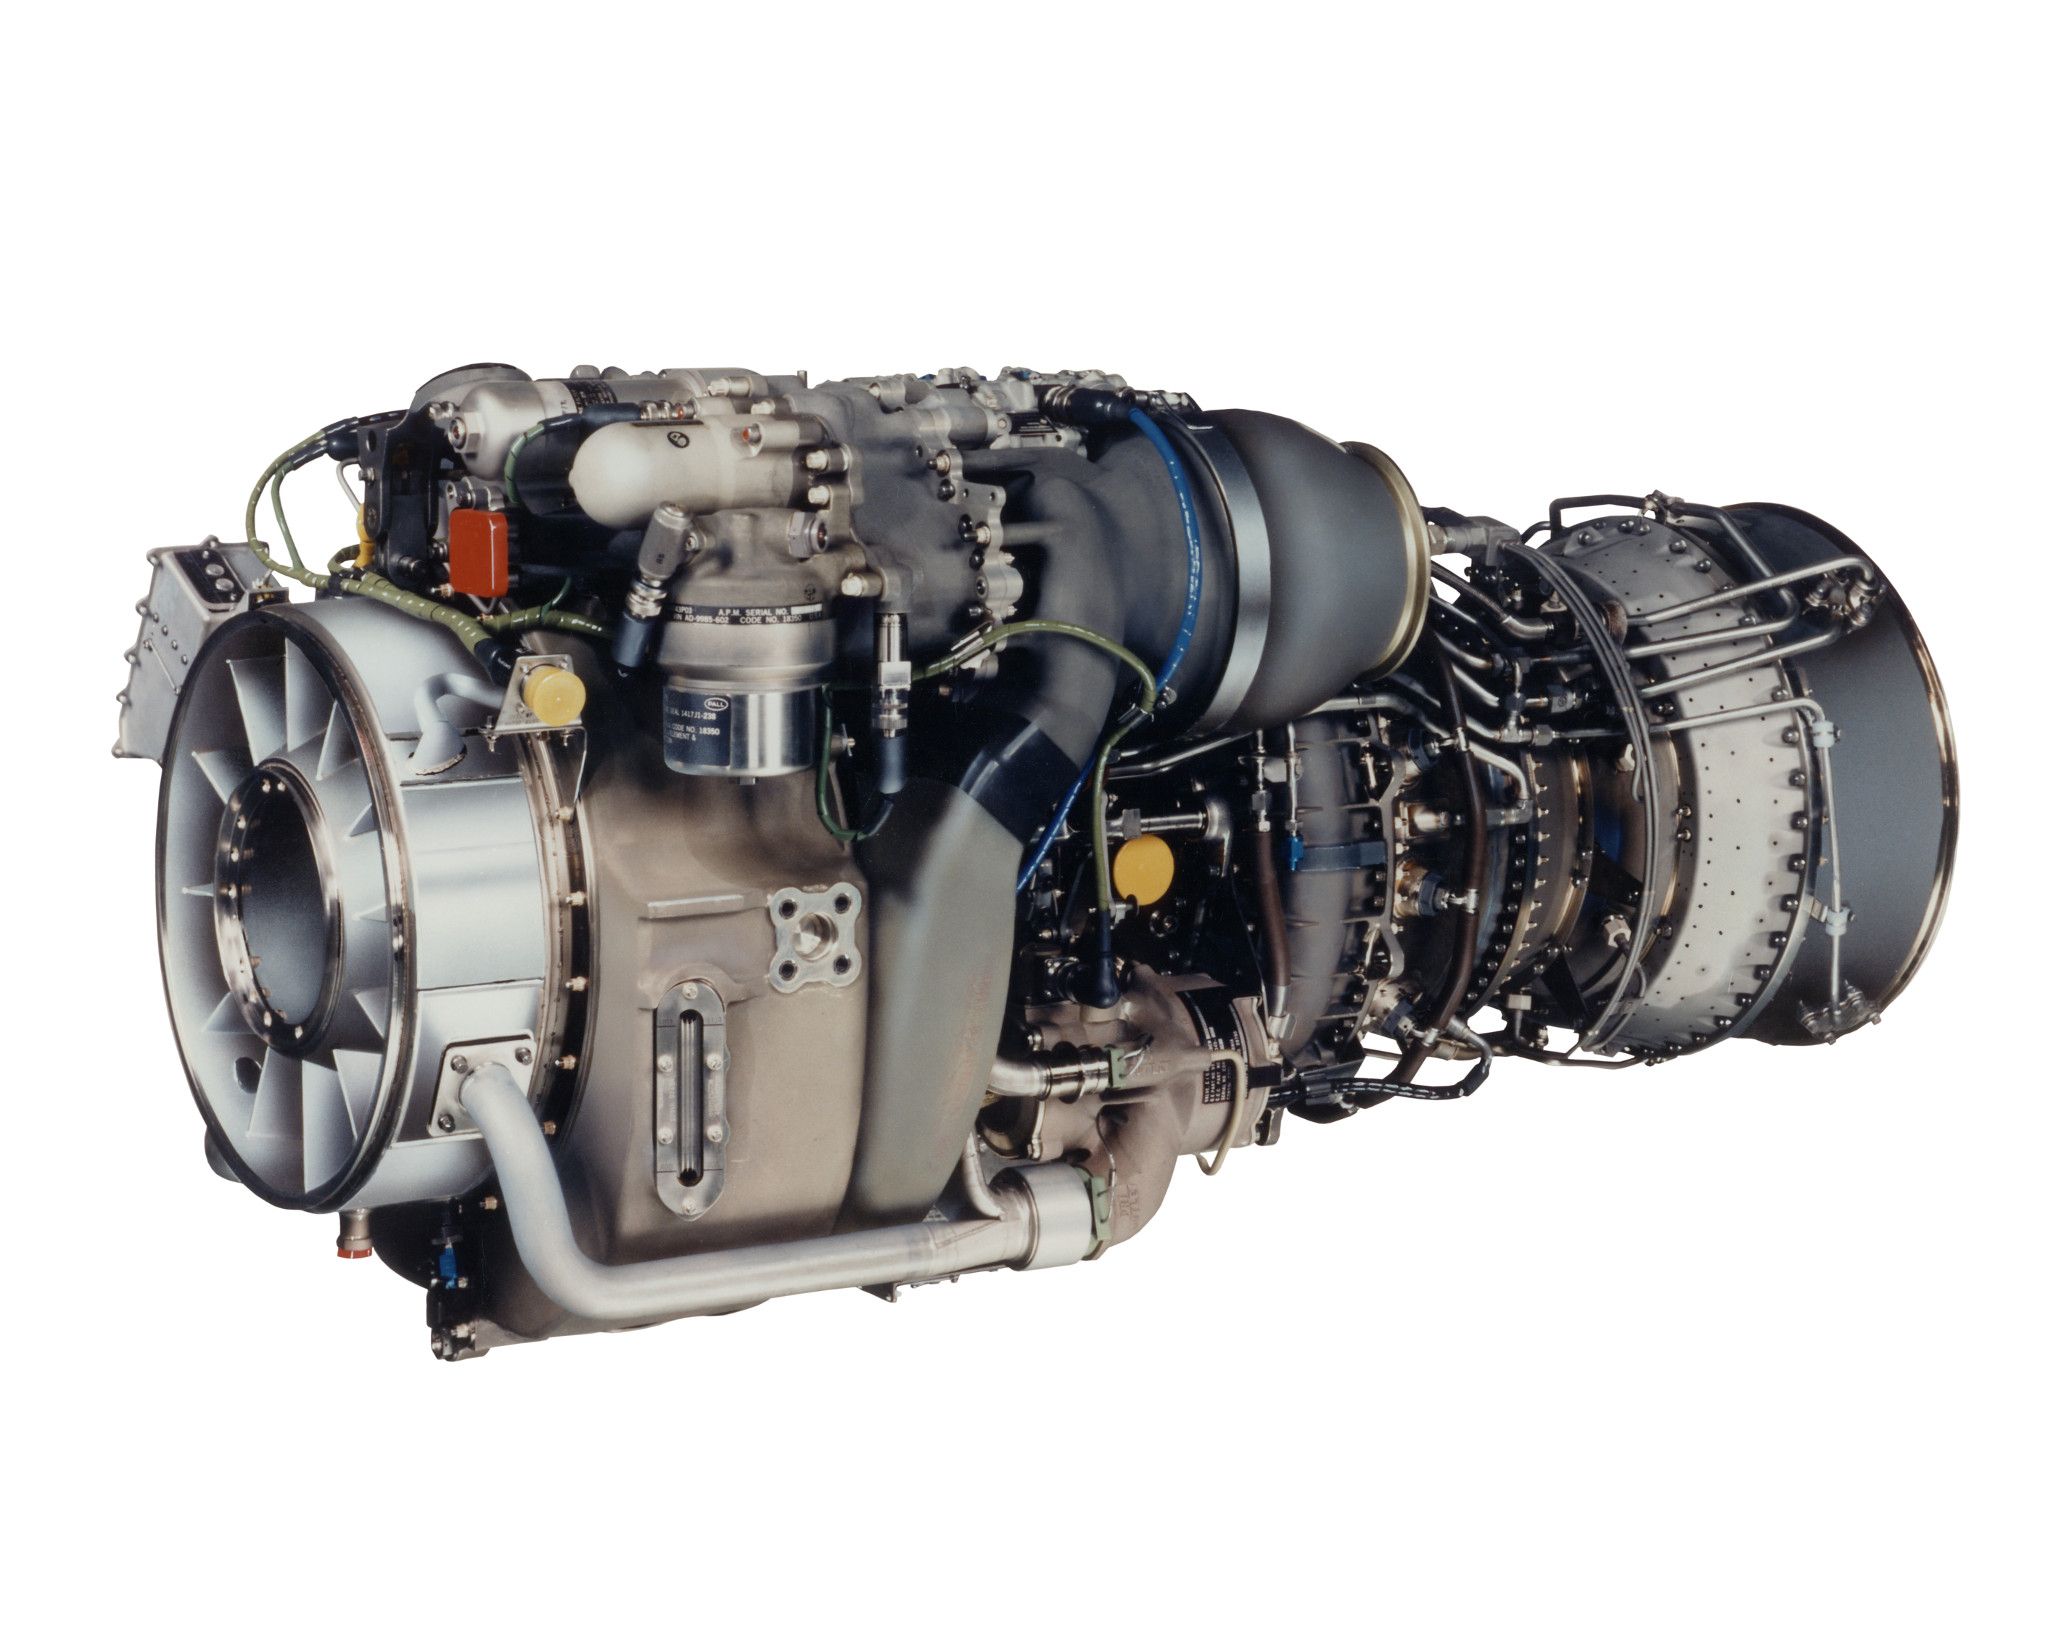 T700 engine